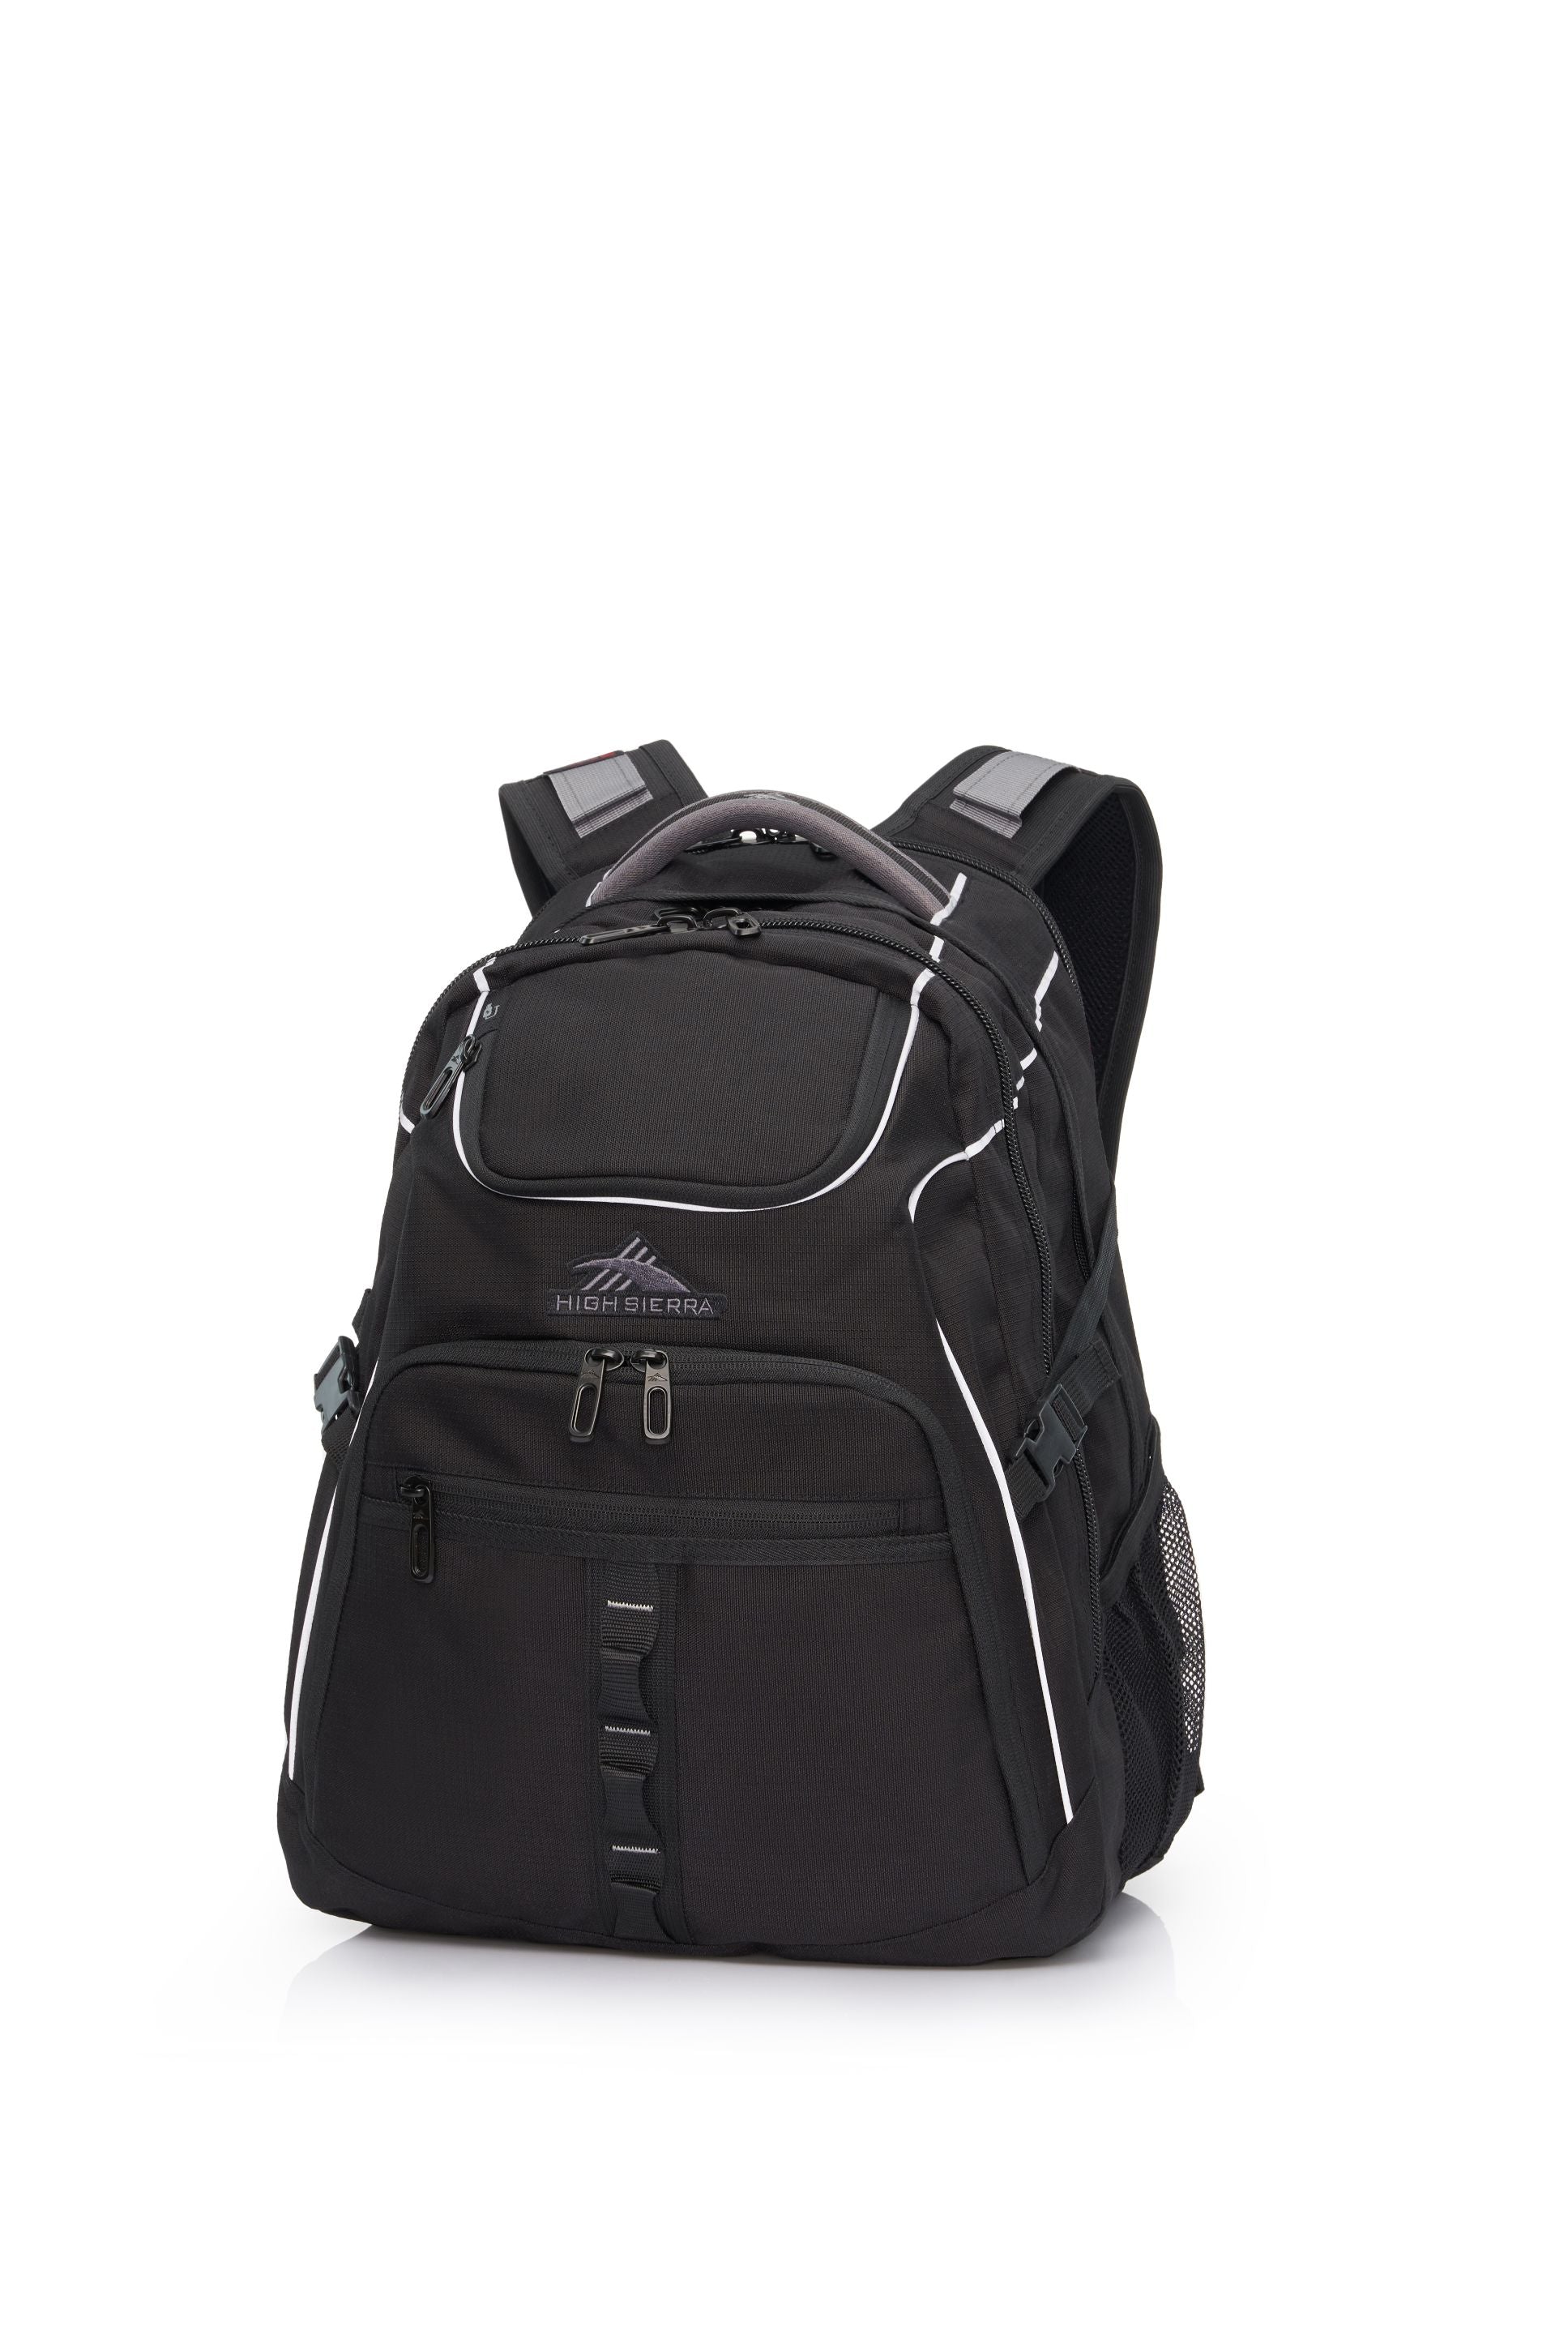 High Sierra - Access 3.0 Eco Backpack - Black